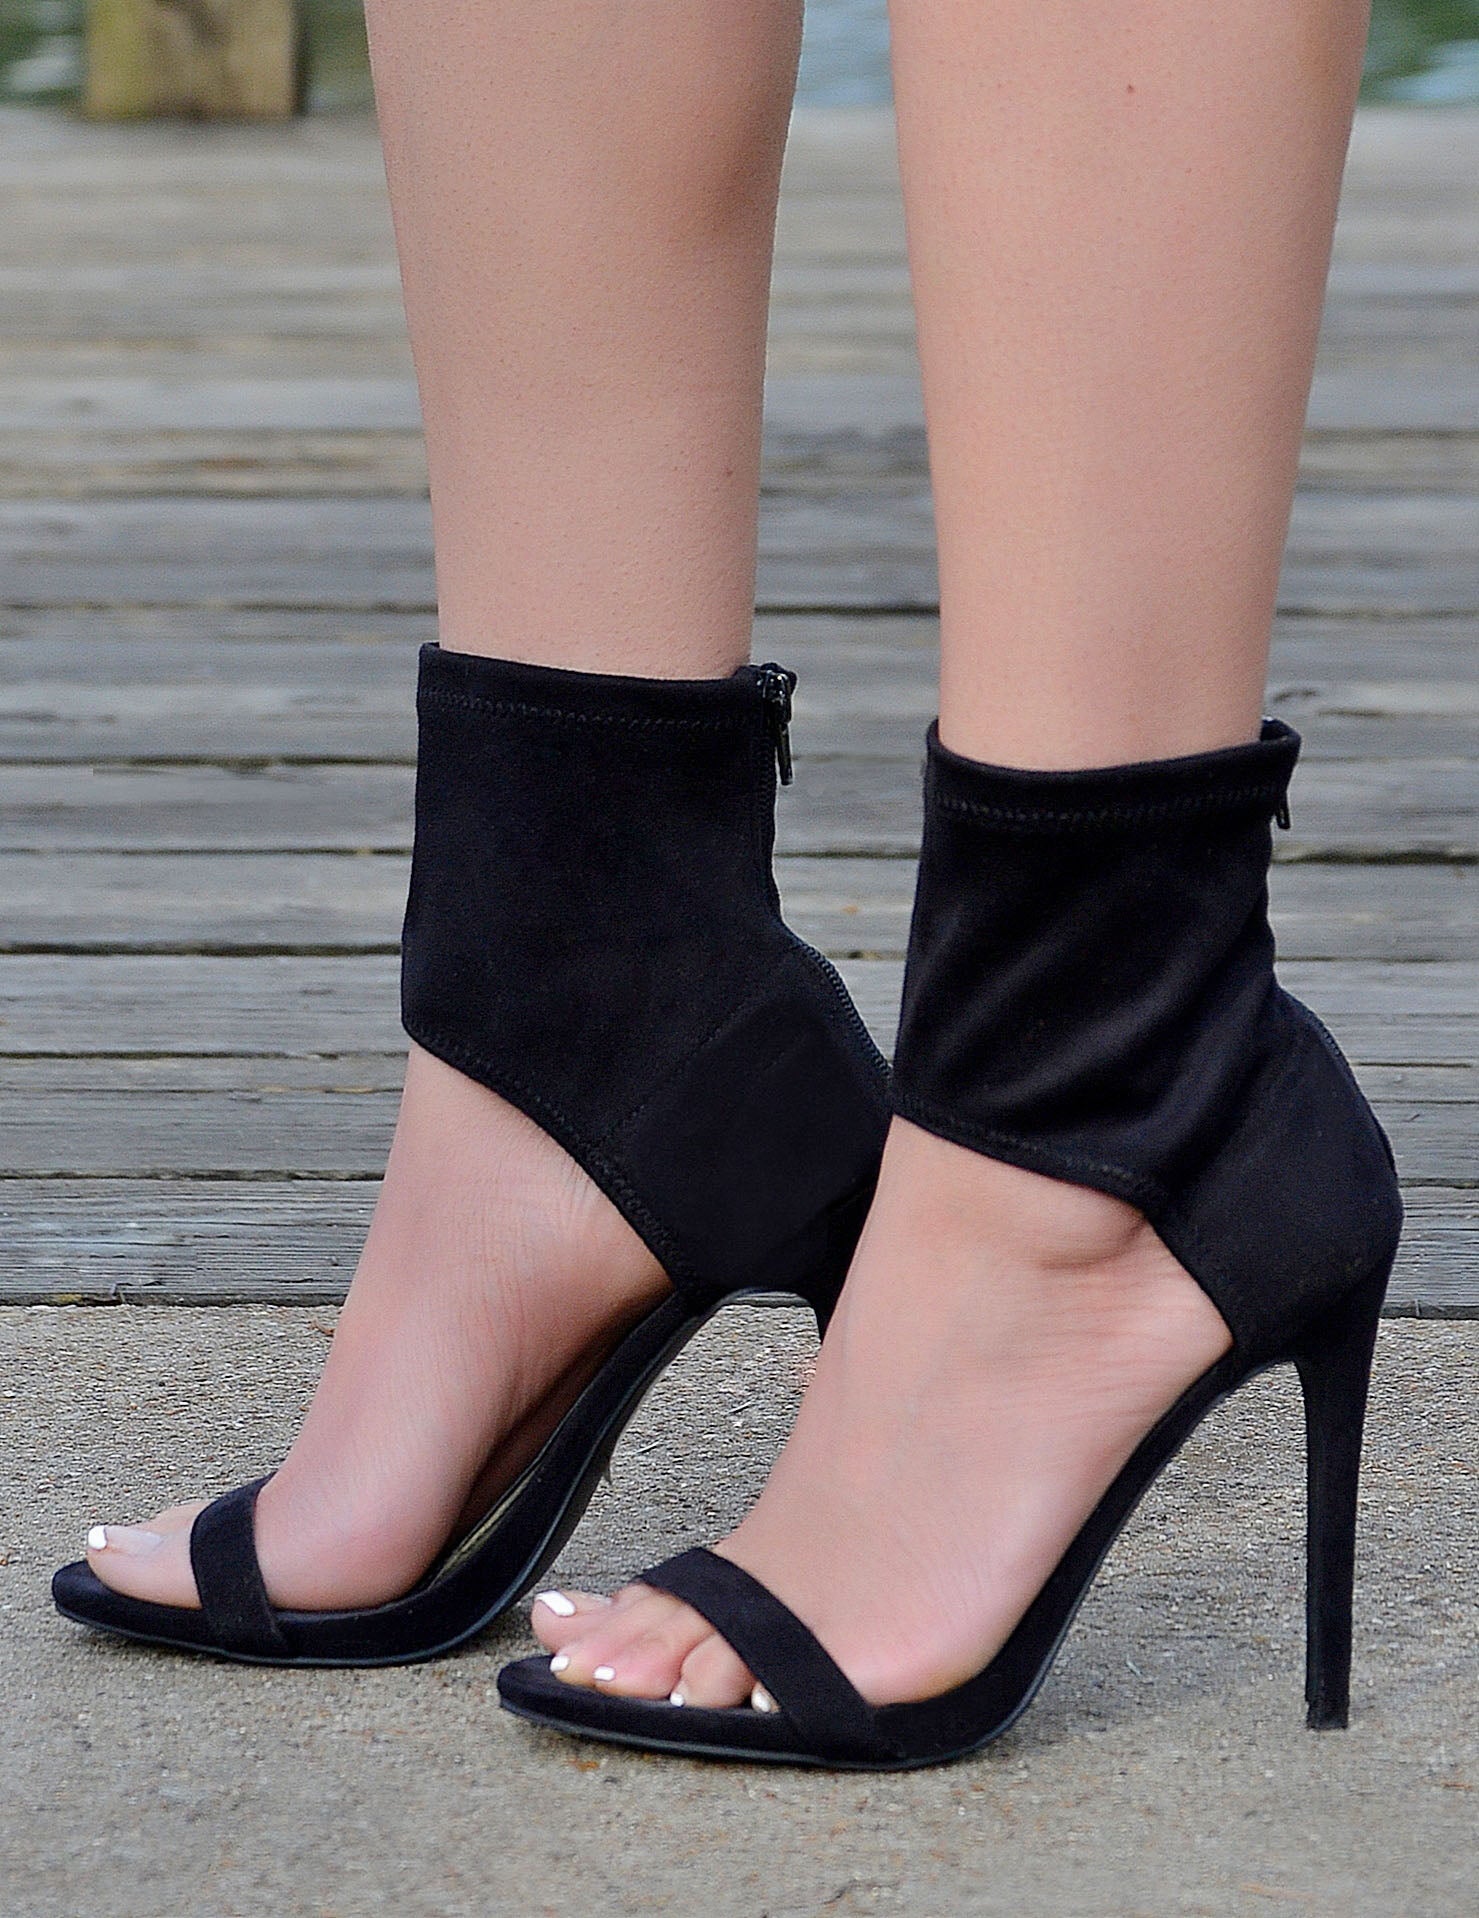 wrap black heels